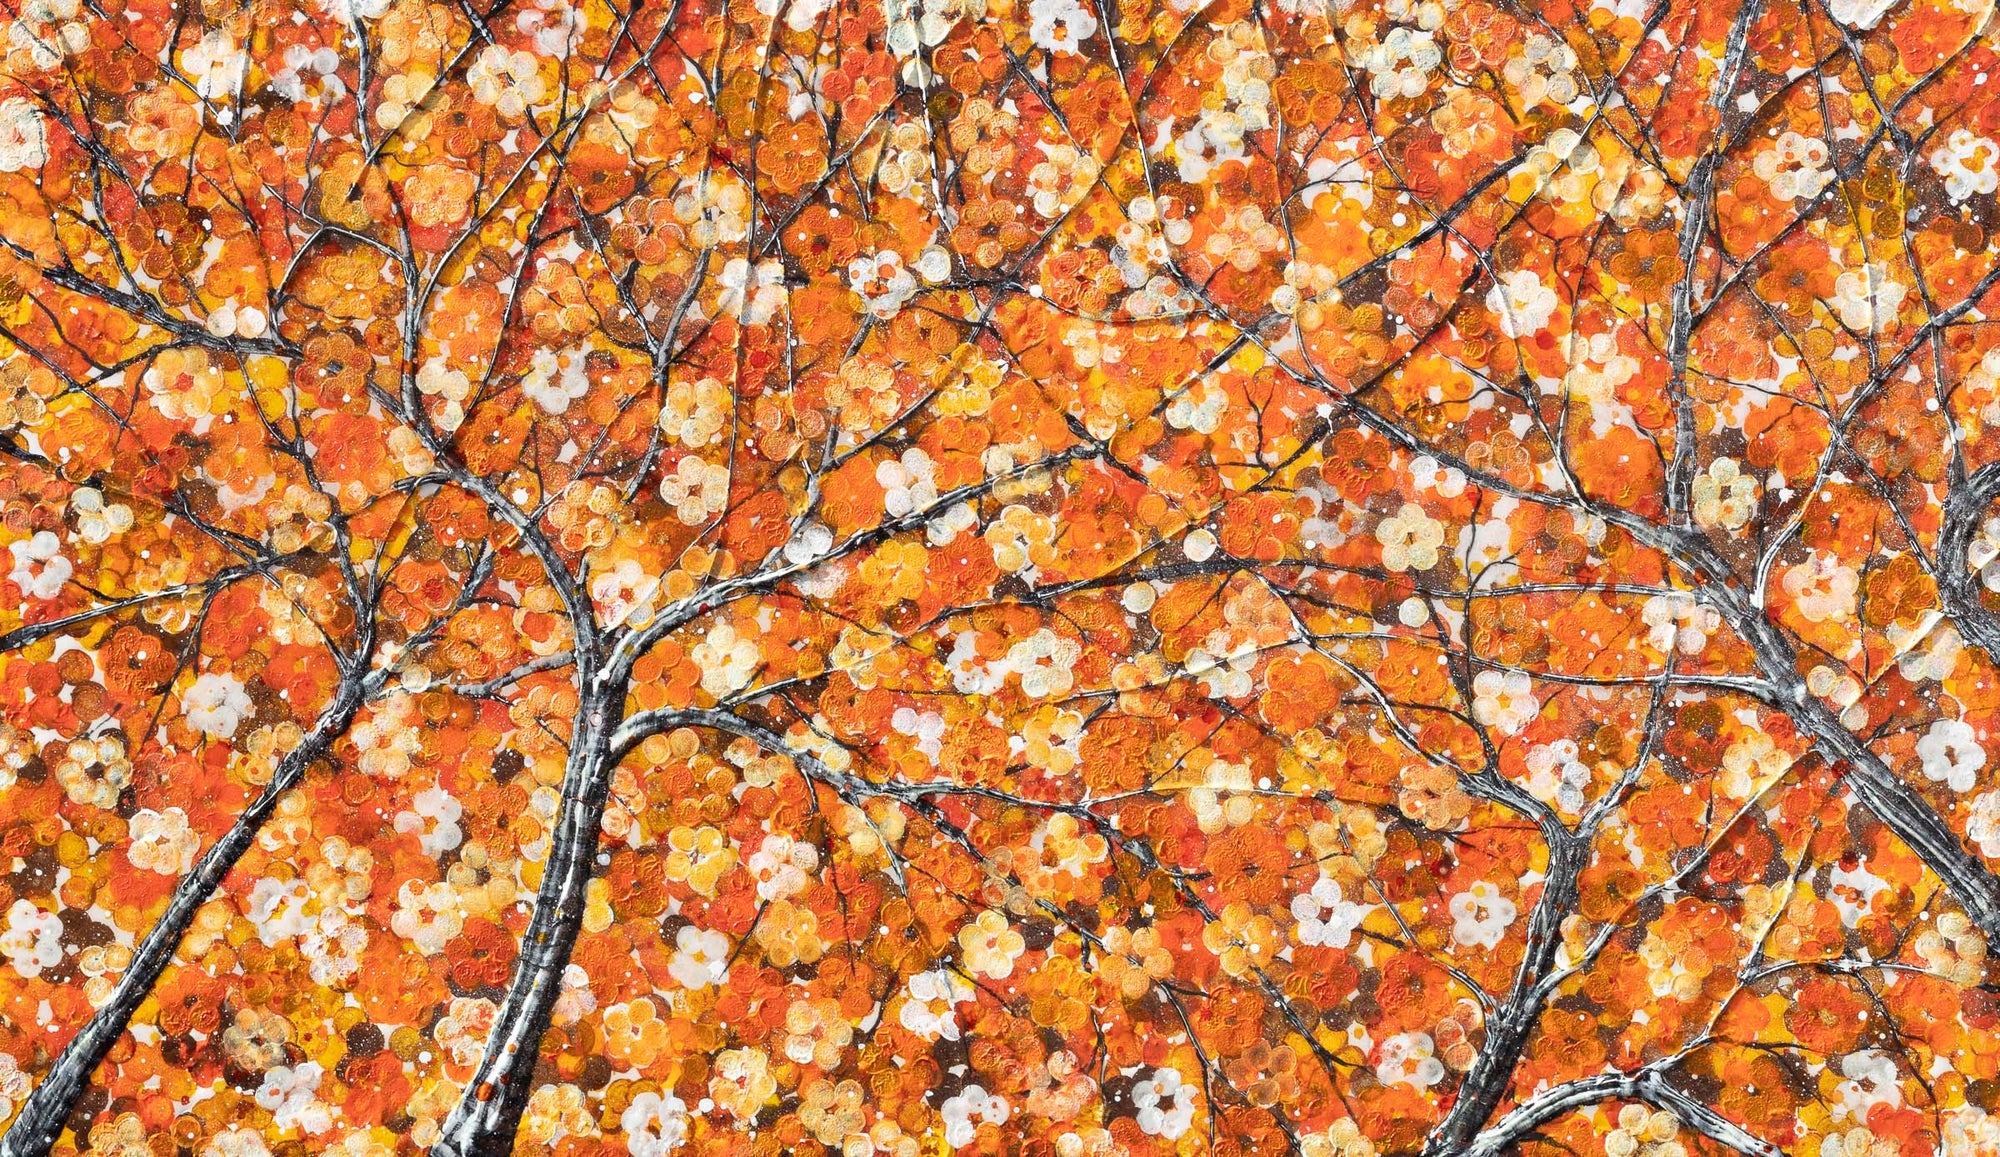 Orange Blossom - Original - SOLD Becky Smith Original